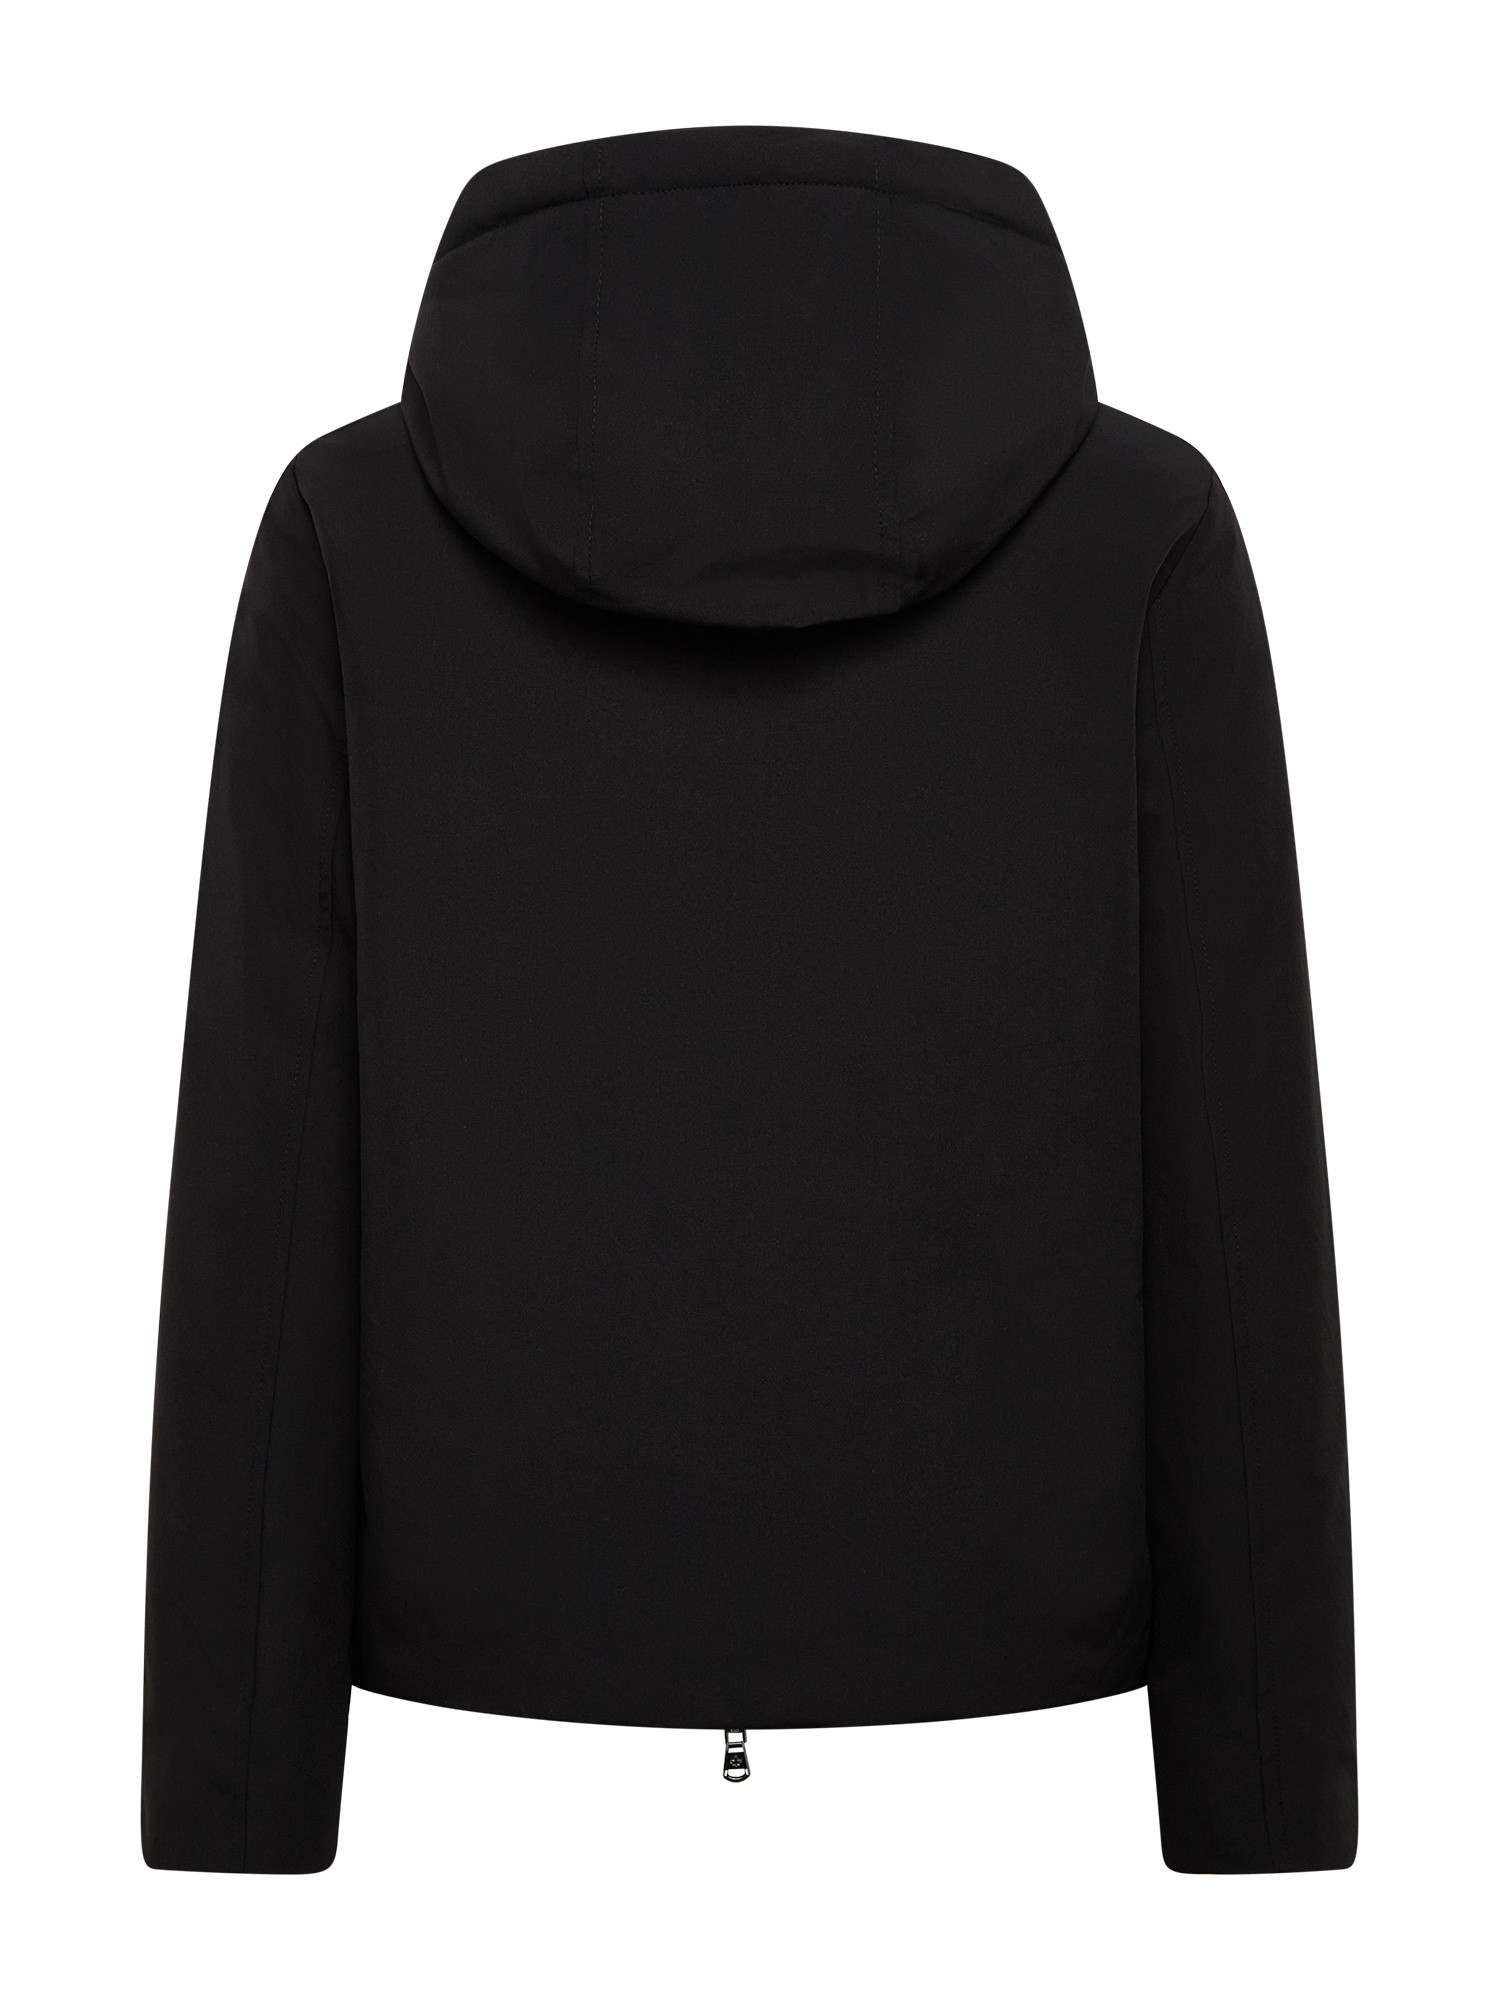 Canadian - Soft zip Jacket, Black, large image number 1